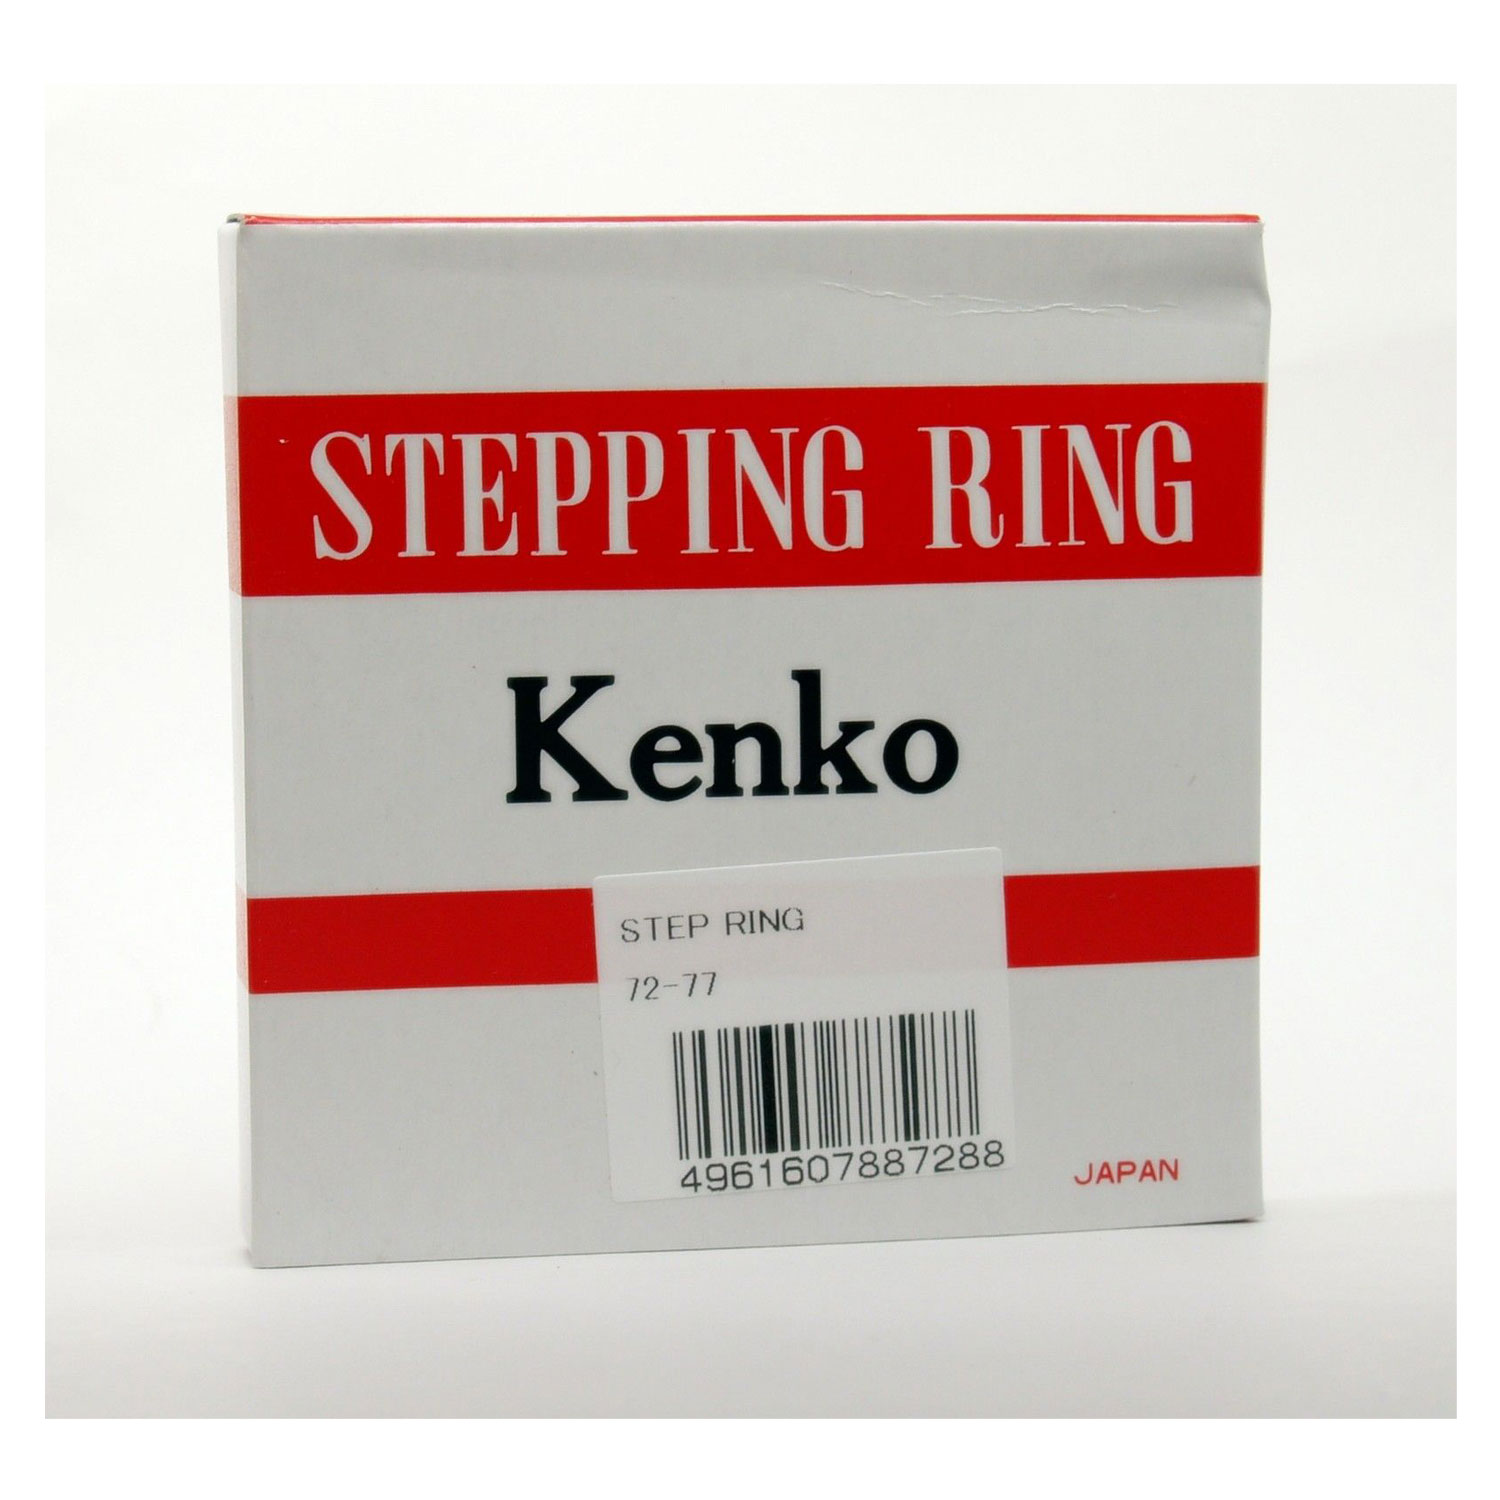 Interpersoonlijk molecuul medeleerling Kenko | 72-77 STEP UP RING | 7277